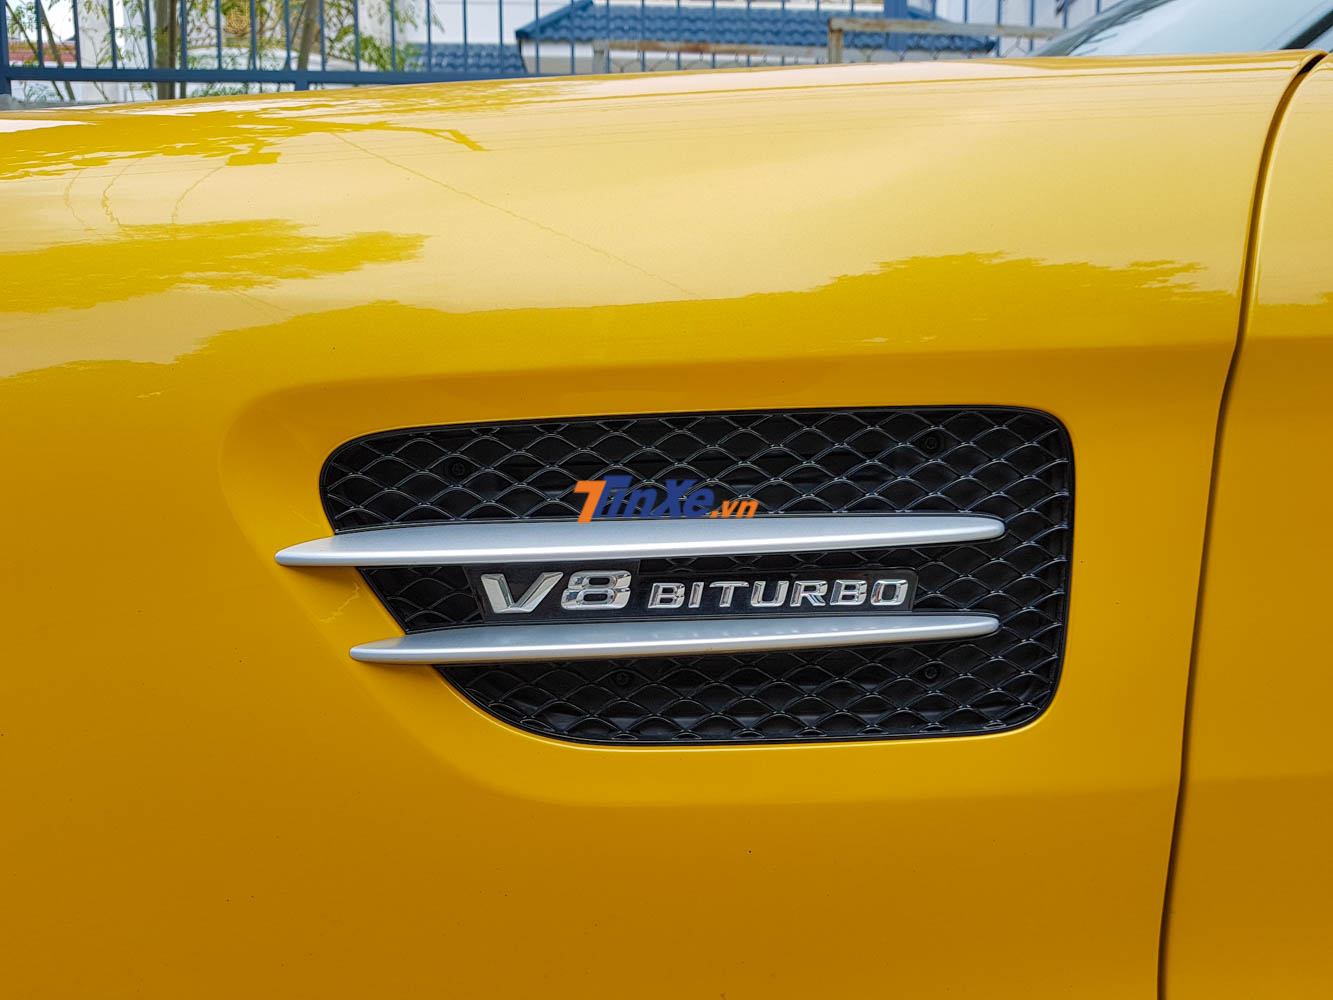 Dòng chữ V8 Biturbo bên hông xe ám chỉ động cơ của Mercedes-AMG GT S